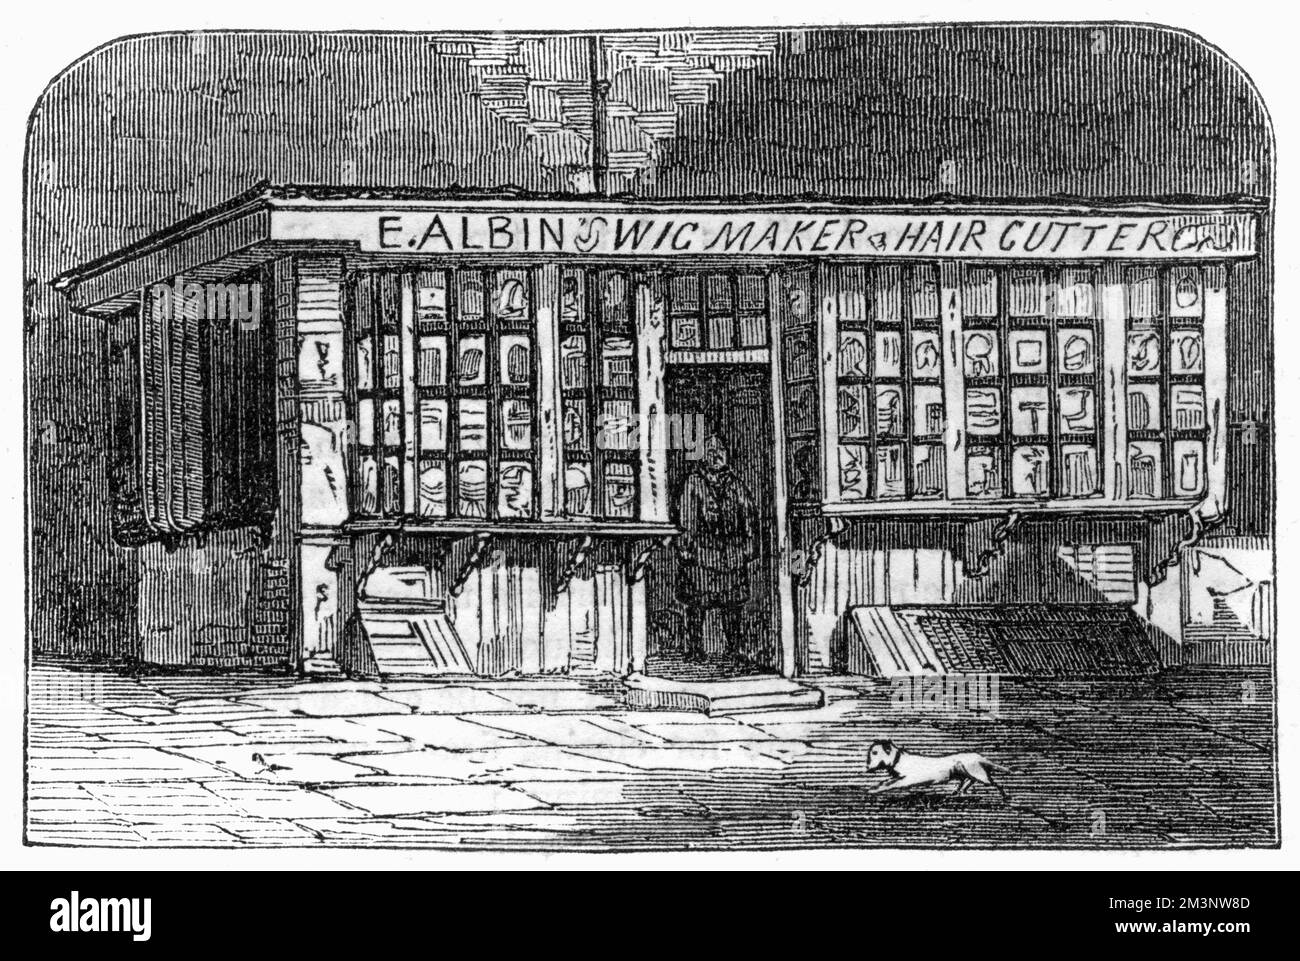 E Albin's Wigmaker and Hair Cutters Shop, vendita di parrucche ai membri della Legal Profession, con sede nelle vicinanze del Middle Temple, Londra. Data: 1857 Foto Stock